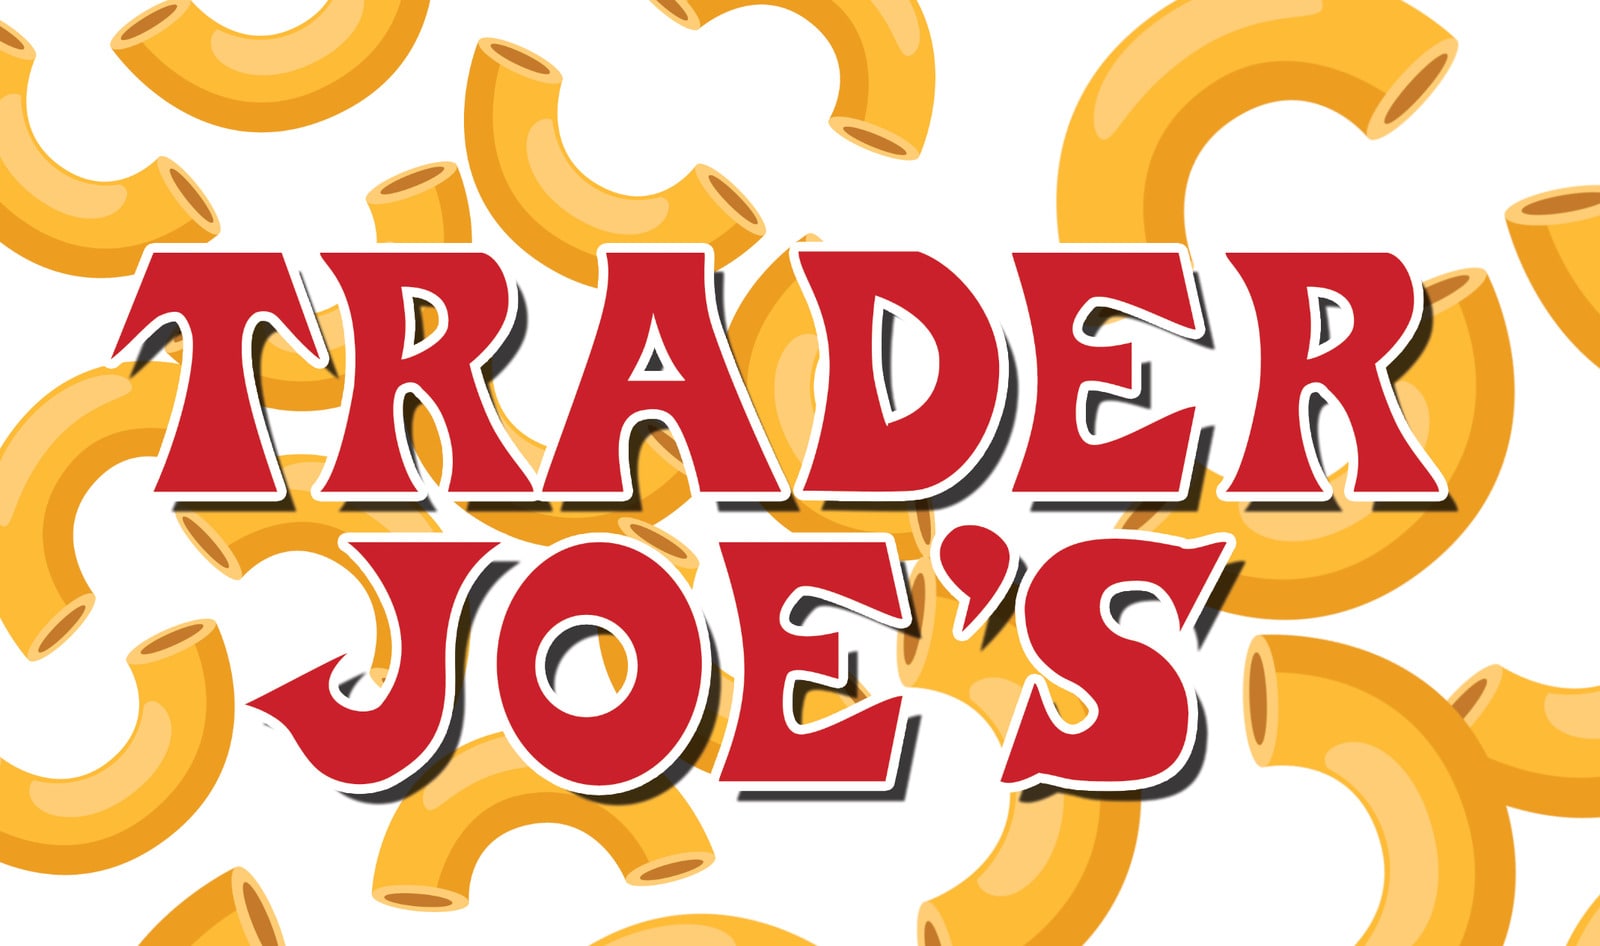 Trader Joe’s to Debut Vegan Mac and Cheese